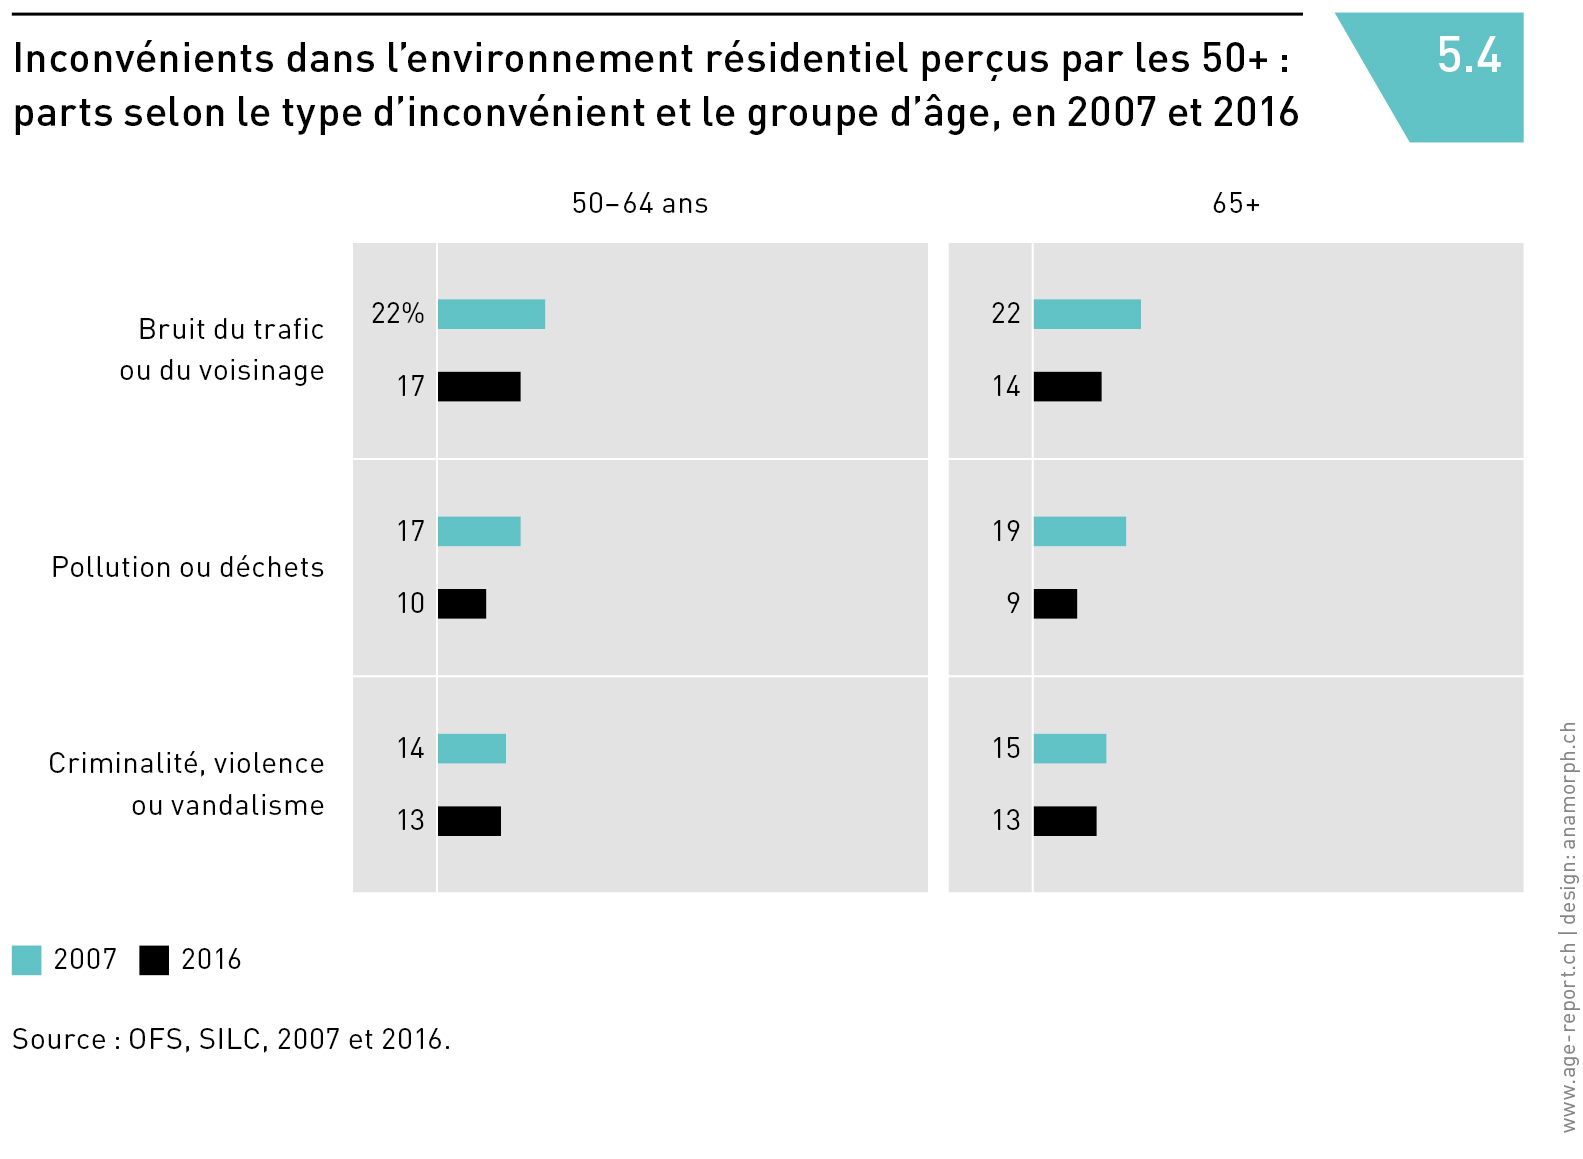 Inconvénients dans l’environnement résidentiel perçus par les 50+ :
parts selon le type d’inconvénient et le groupe d’âge, en 2007 et 2016